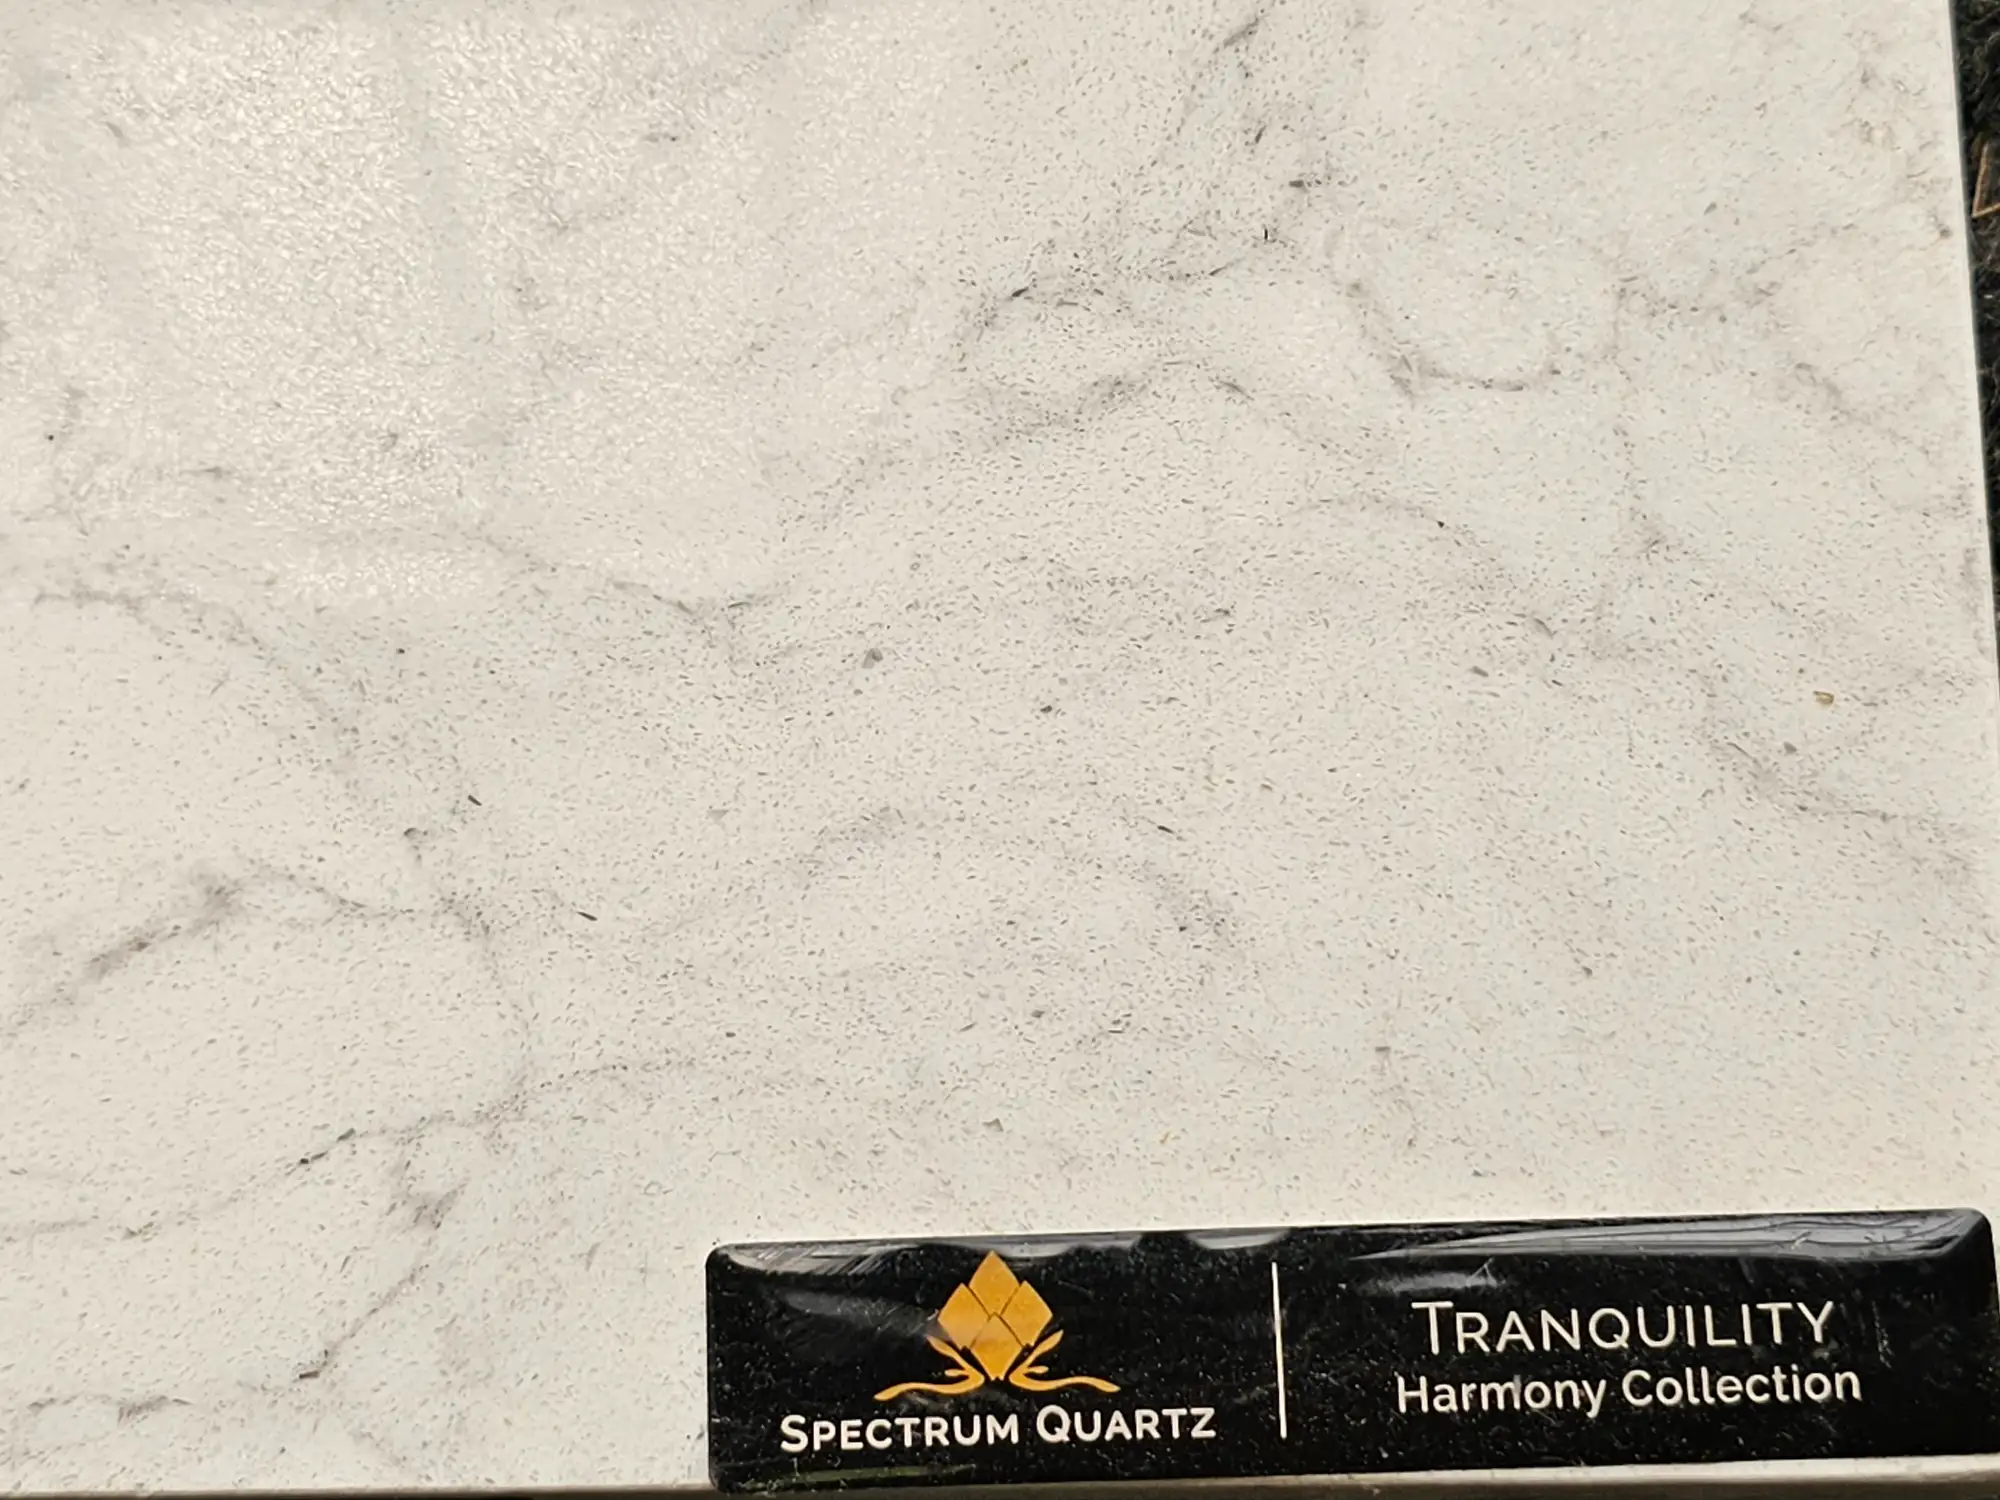 Tranquility spectrum quartz countertop